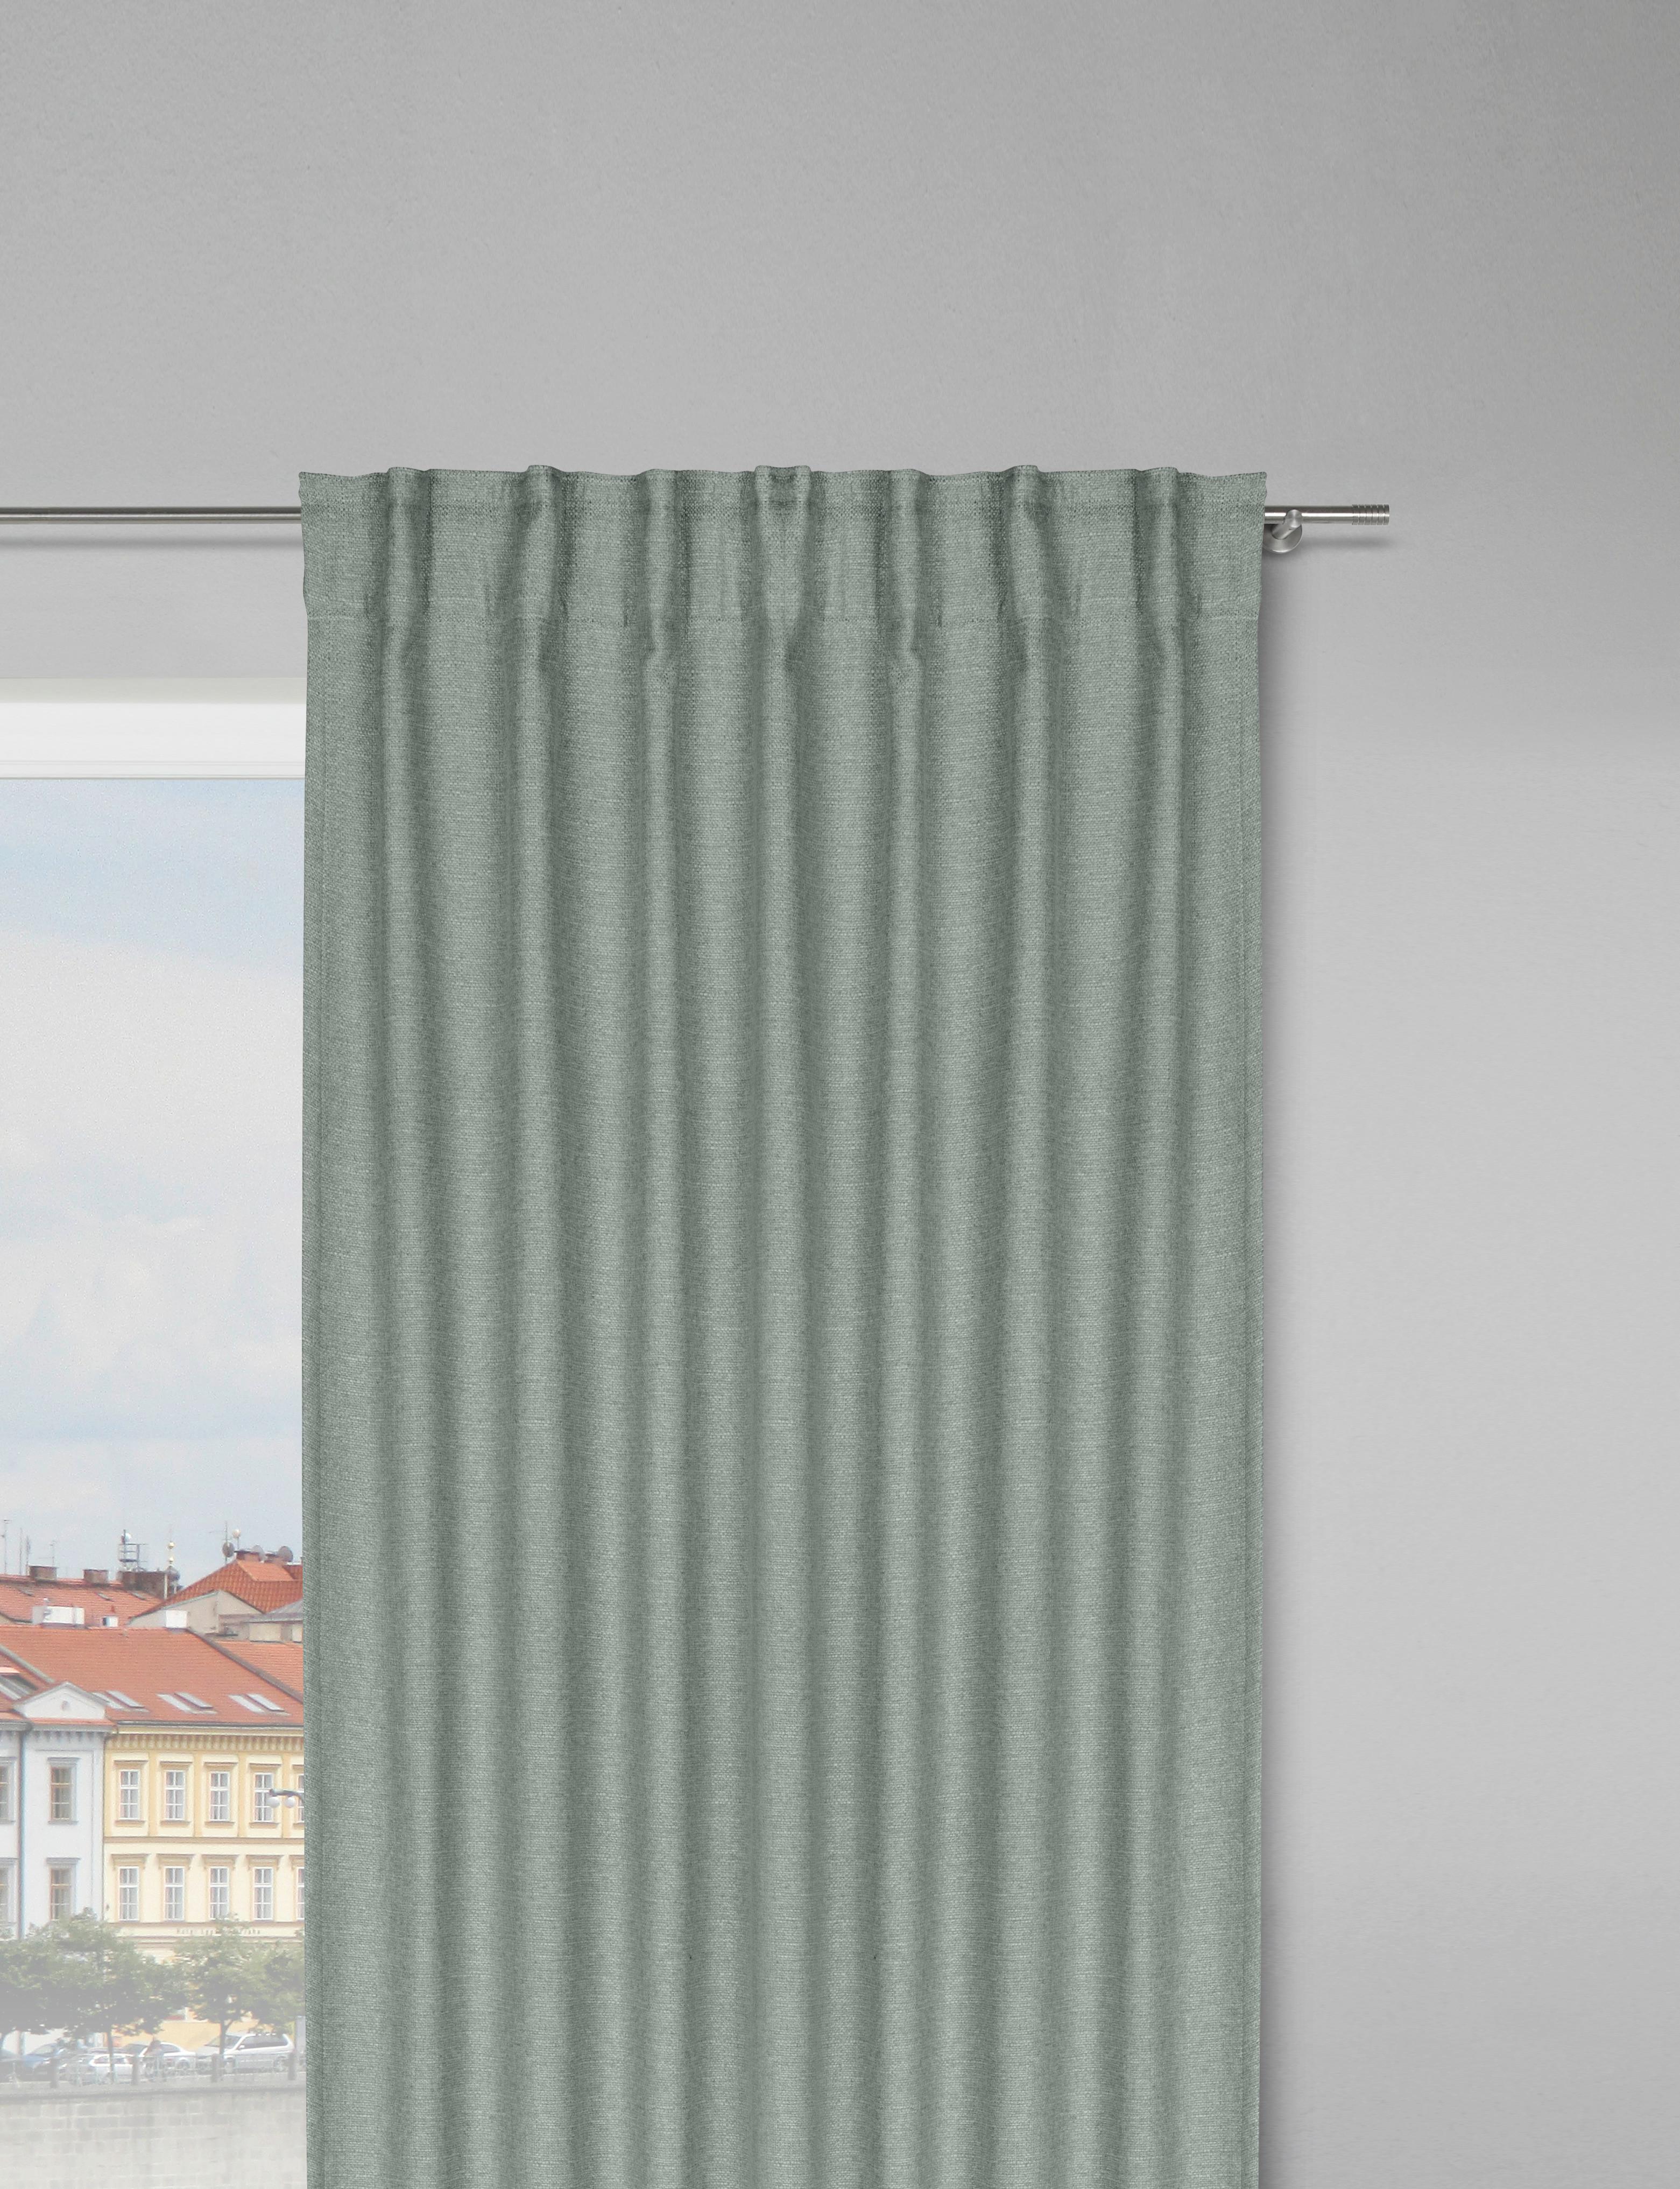 Termoizolační Závěs Alfi, 135/255cm, Zelená - zelená, Konvenční, textil (135/255cm) - Modern Living